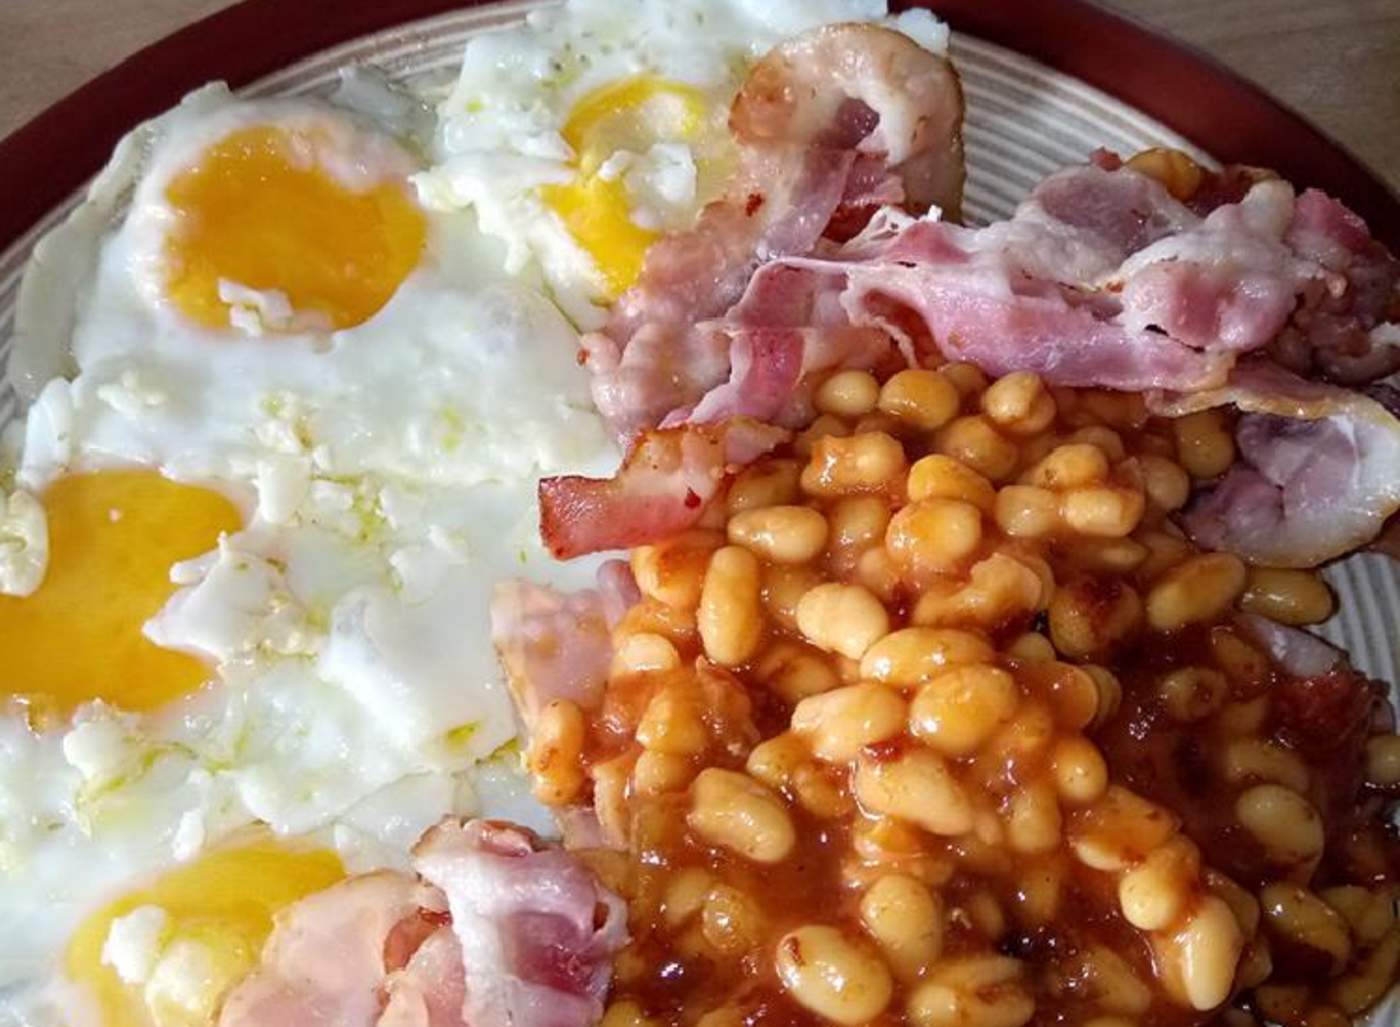 Foto de desayuno se hace viral por su aspecto desagradable